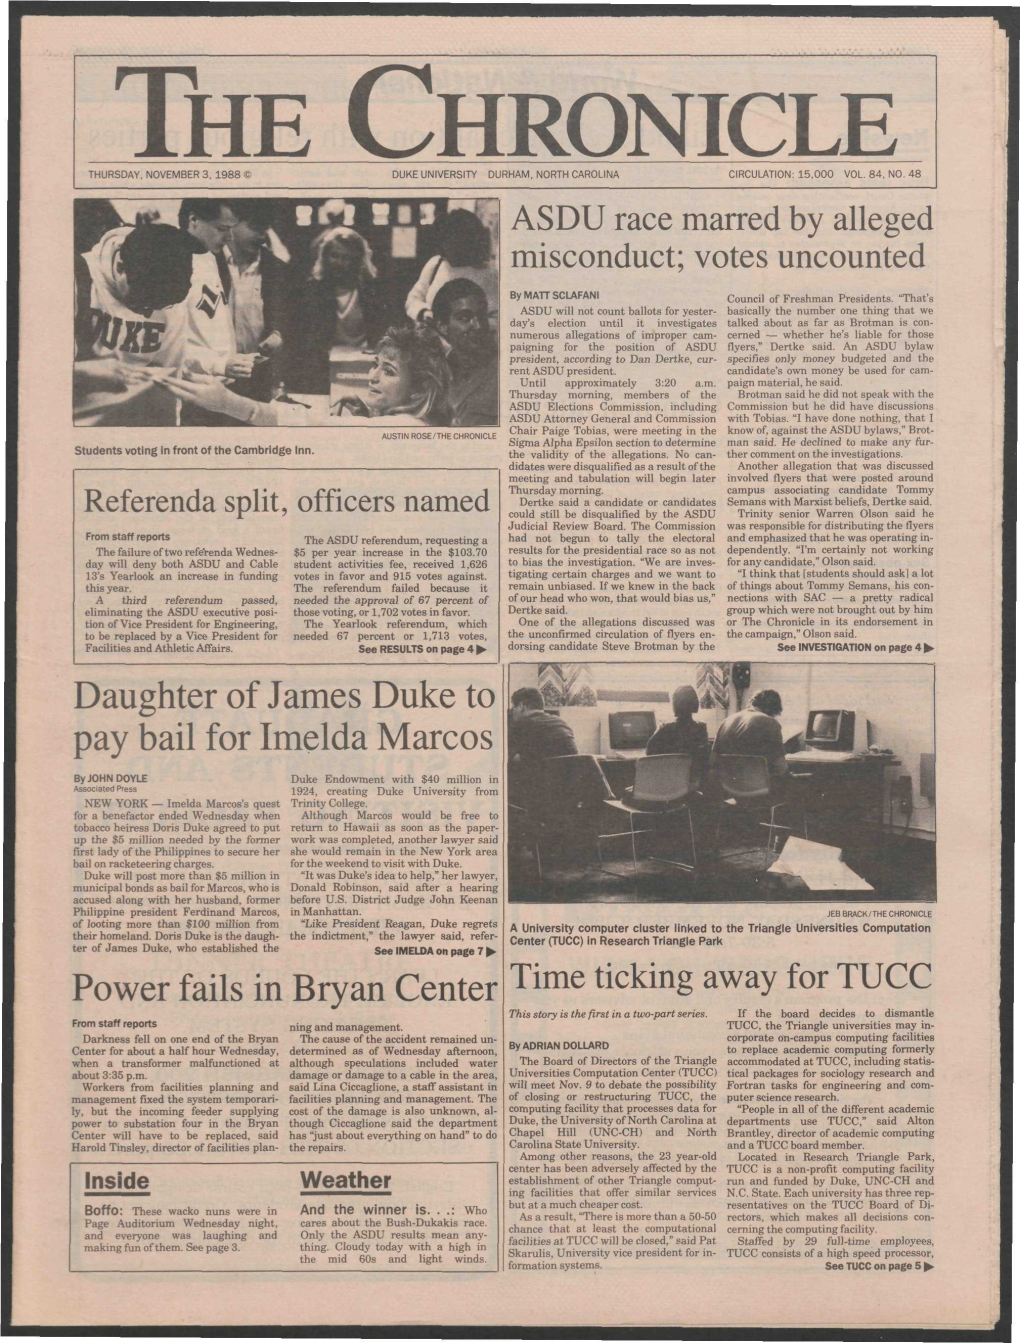 The Chronicle Thursday, November 3, 1988 « Duke University Durham